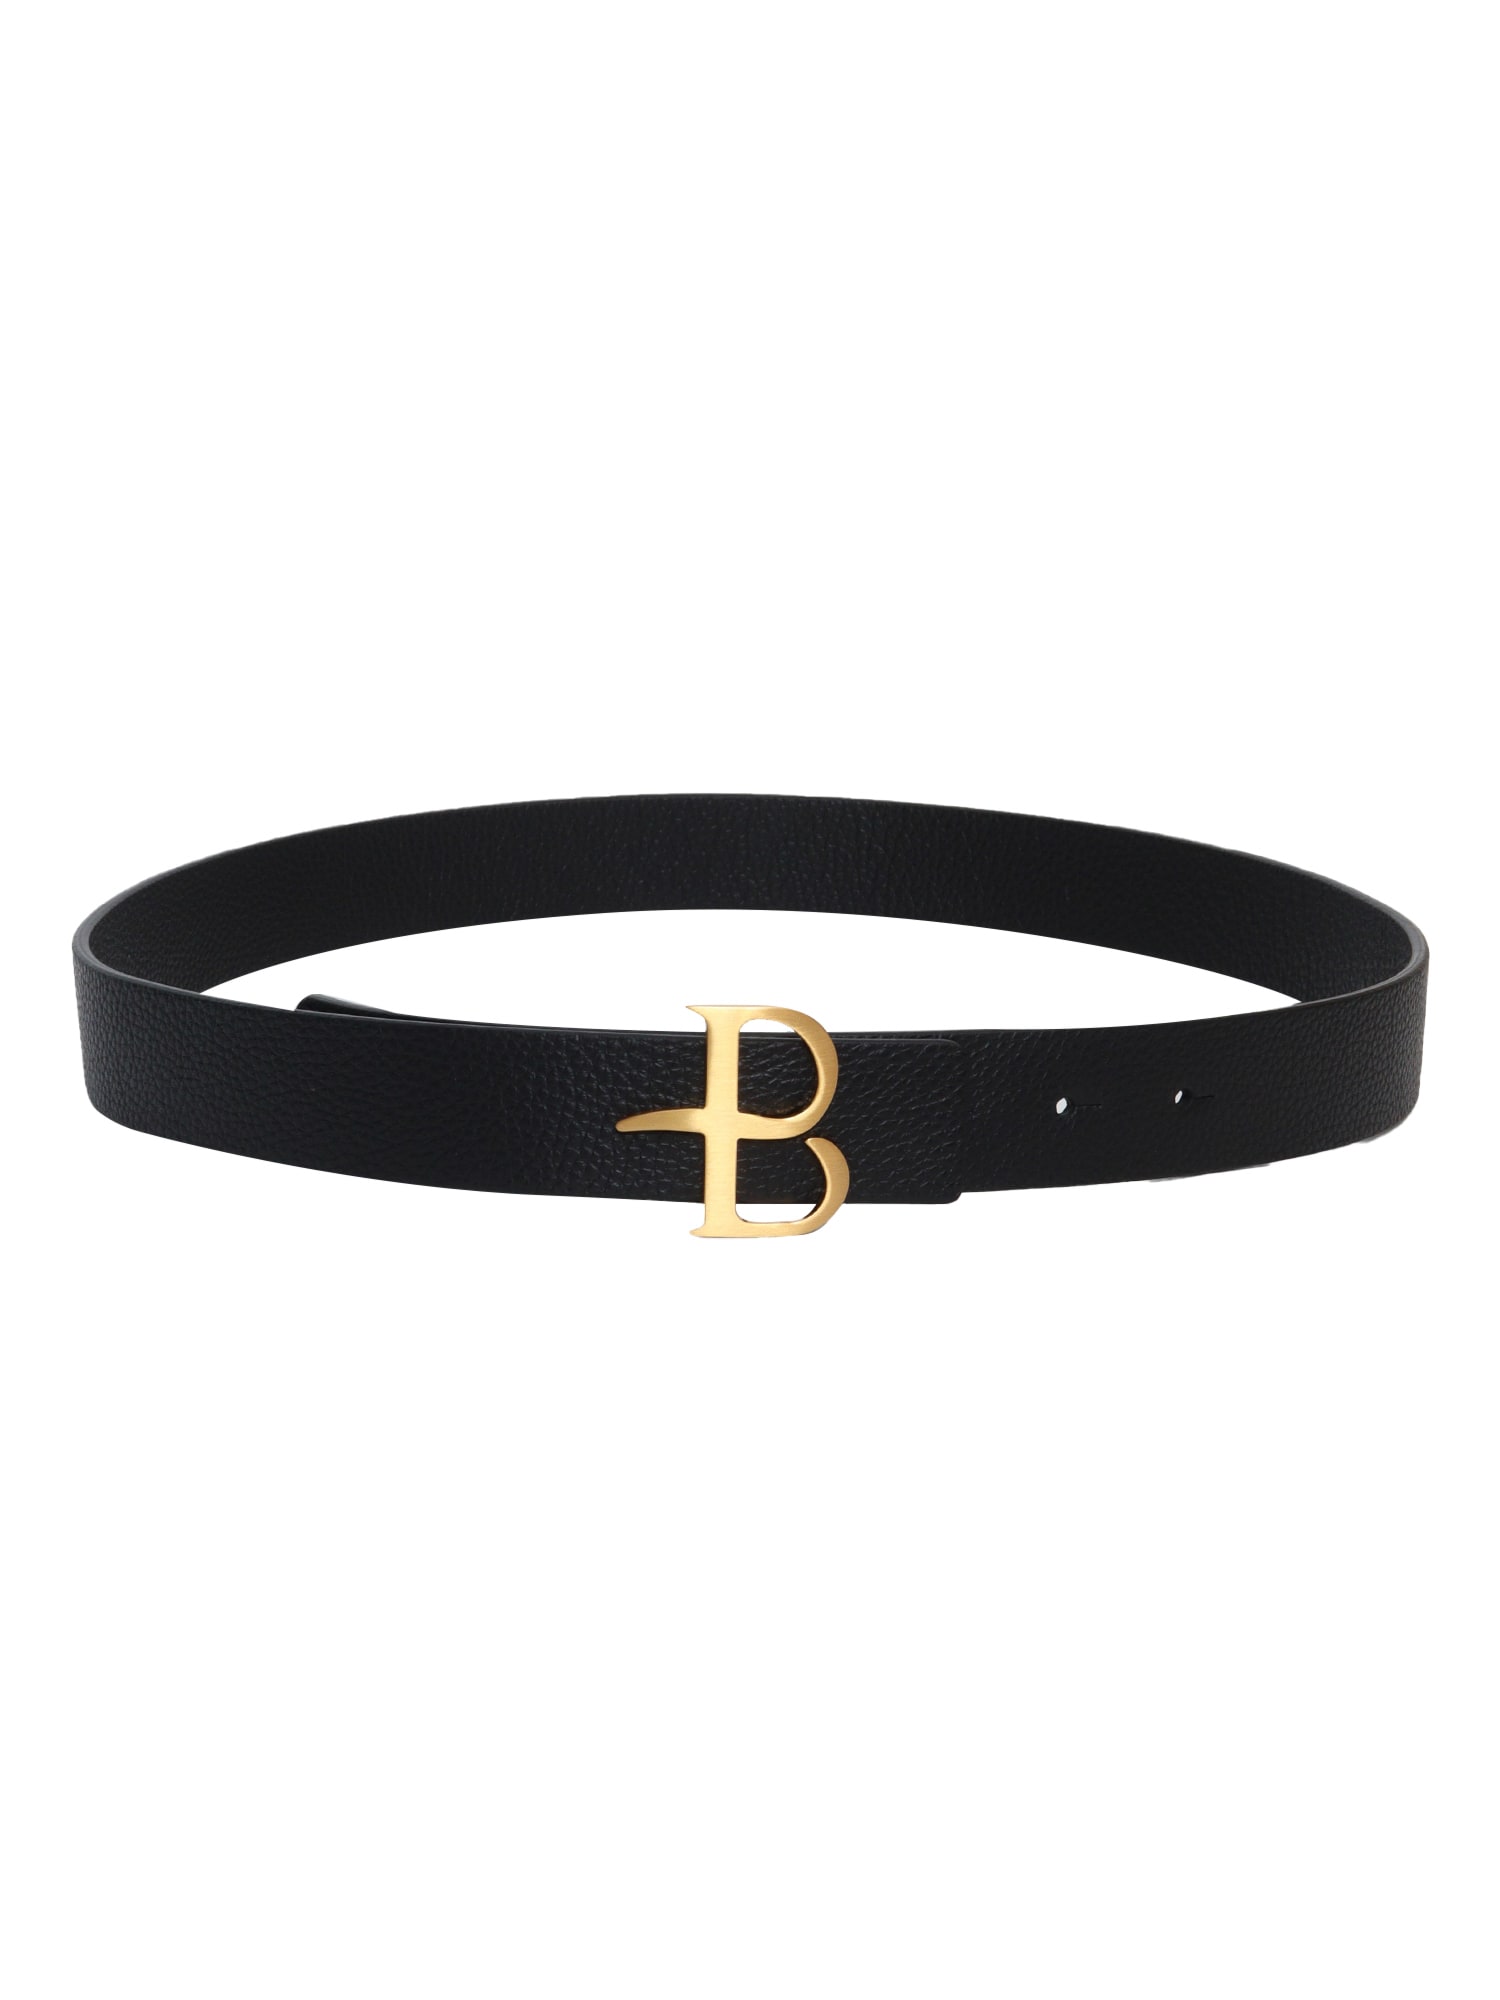 Black Belt With Gold Logo